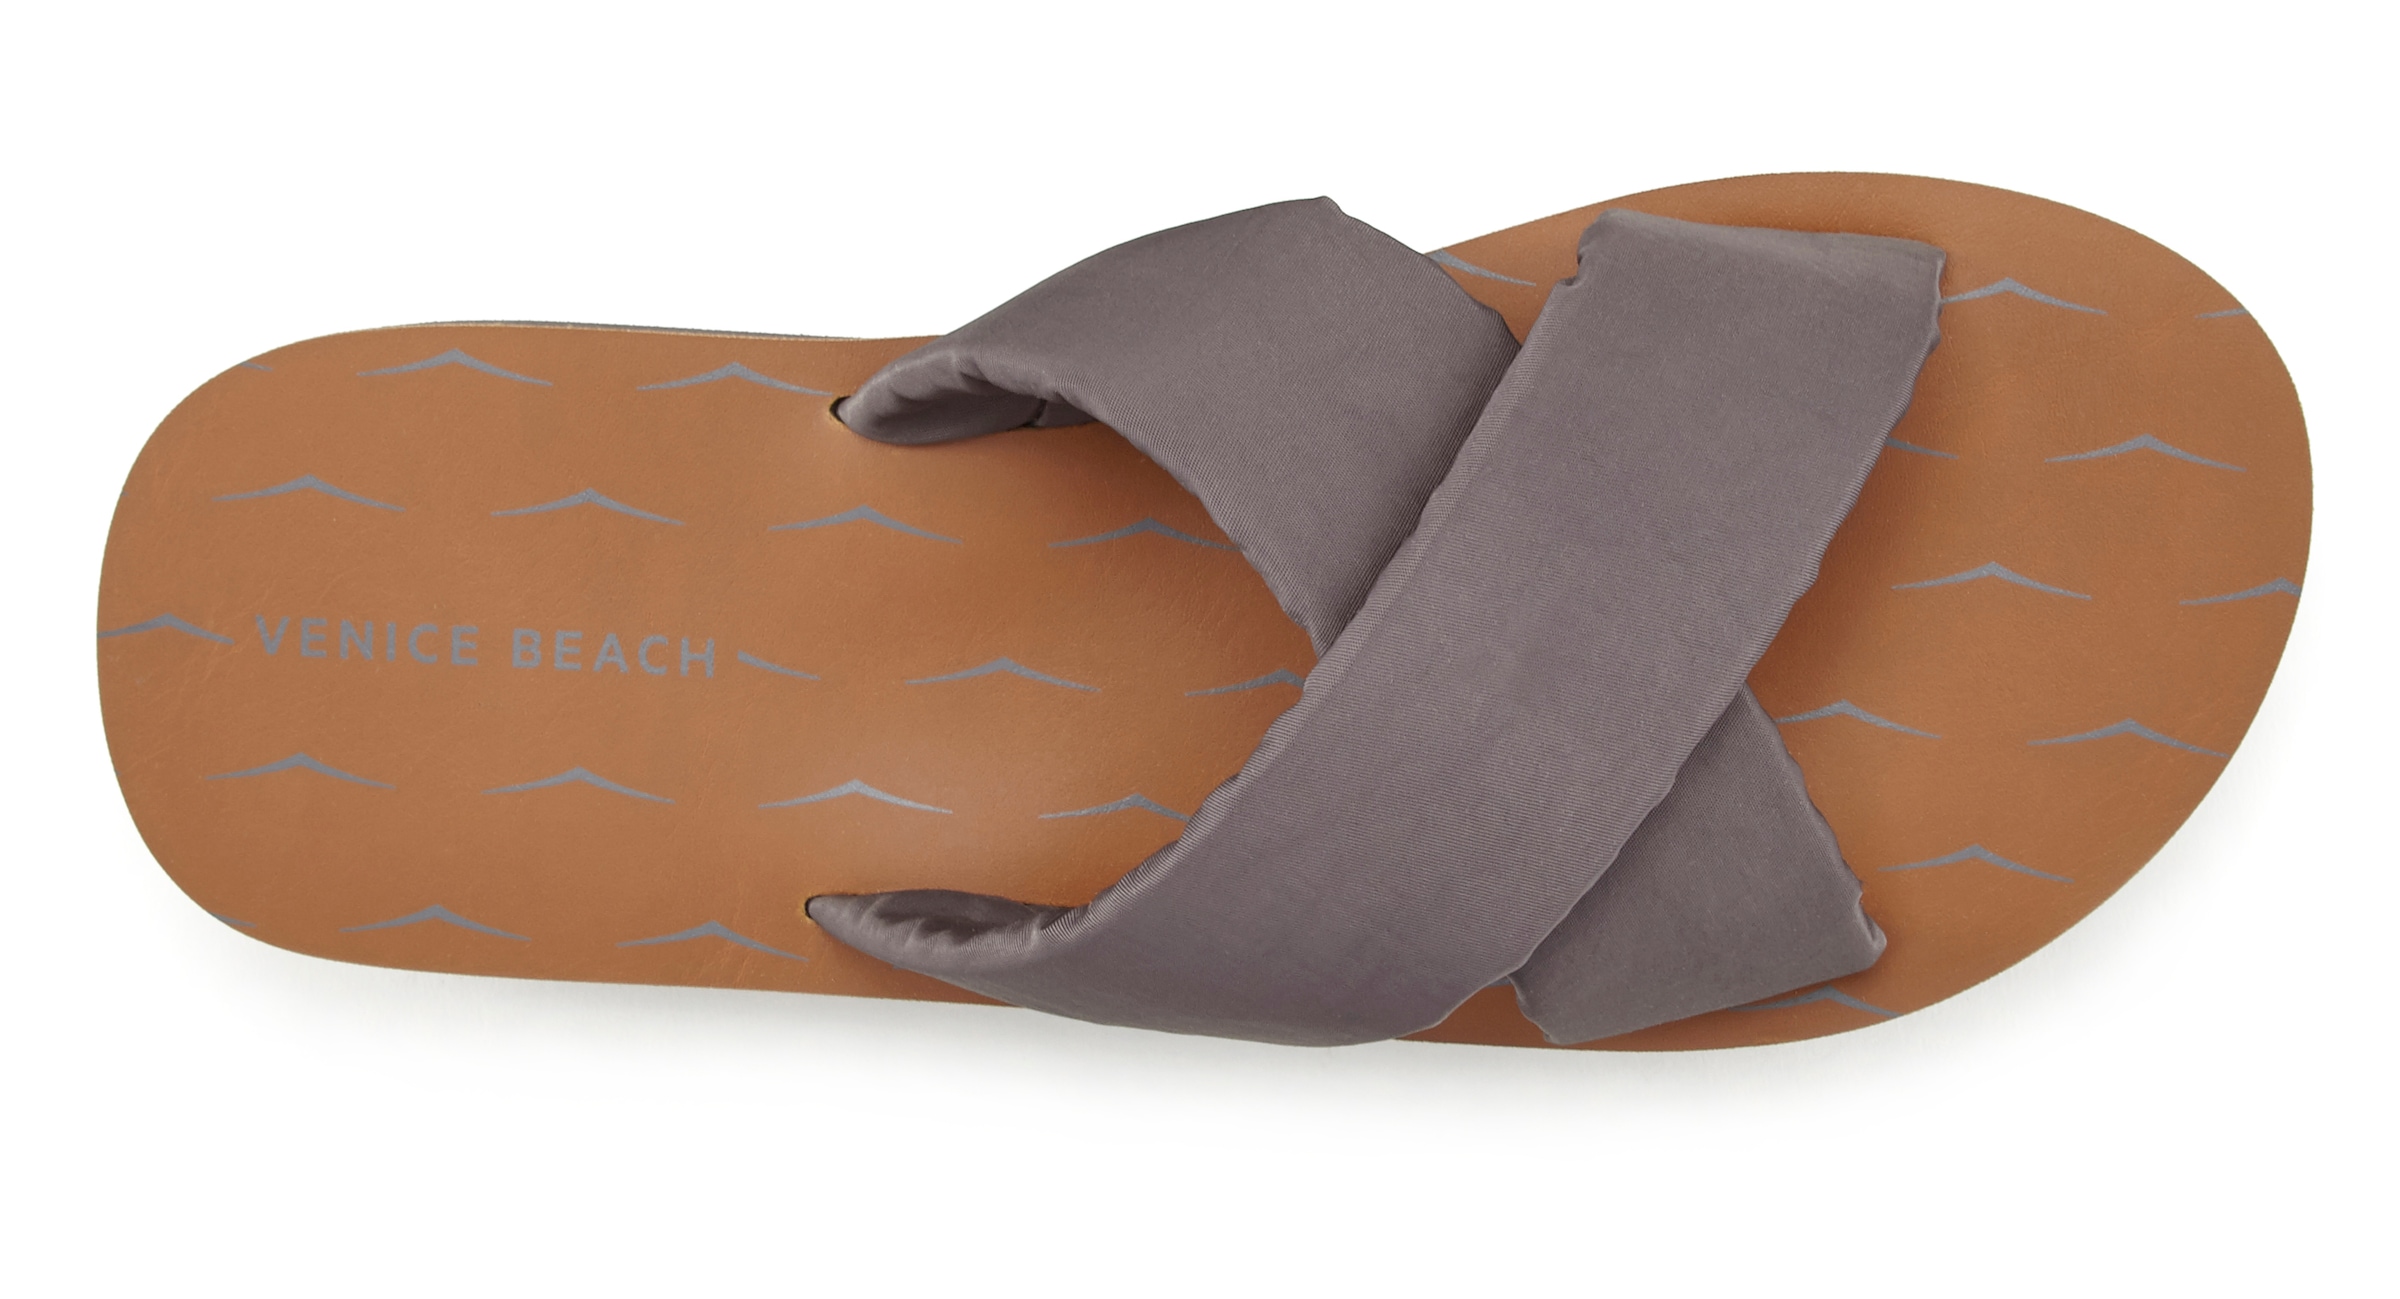 Venice Beach Badepantolette, Sandale, Pantolette, Badeschuh aus besonders leichtem Material VEGAN